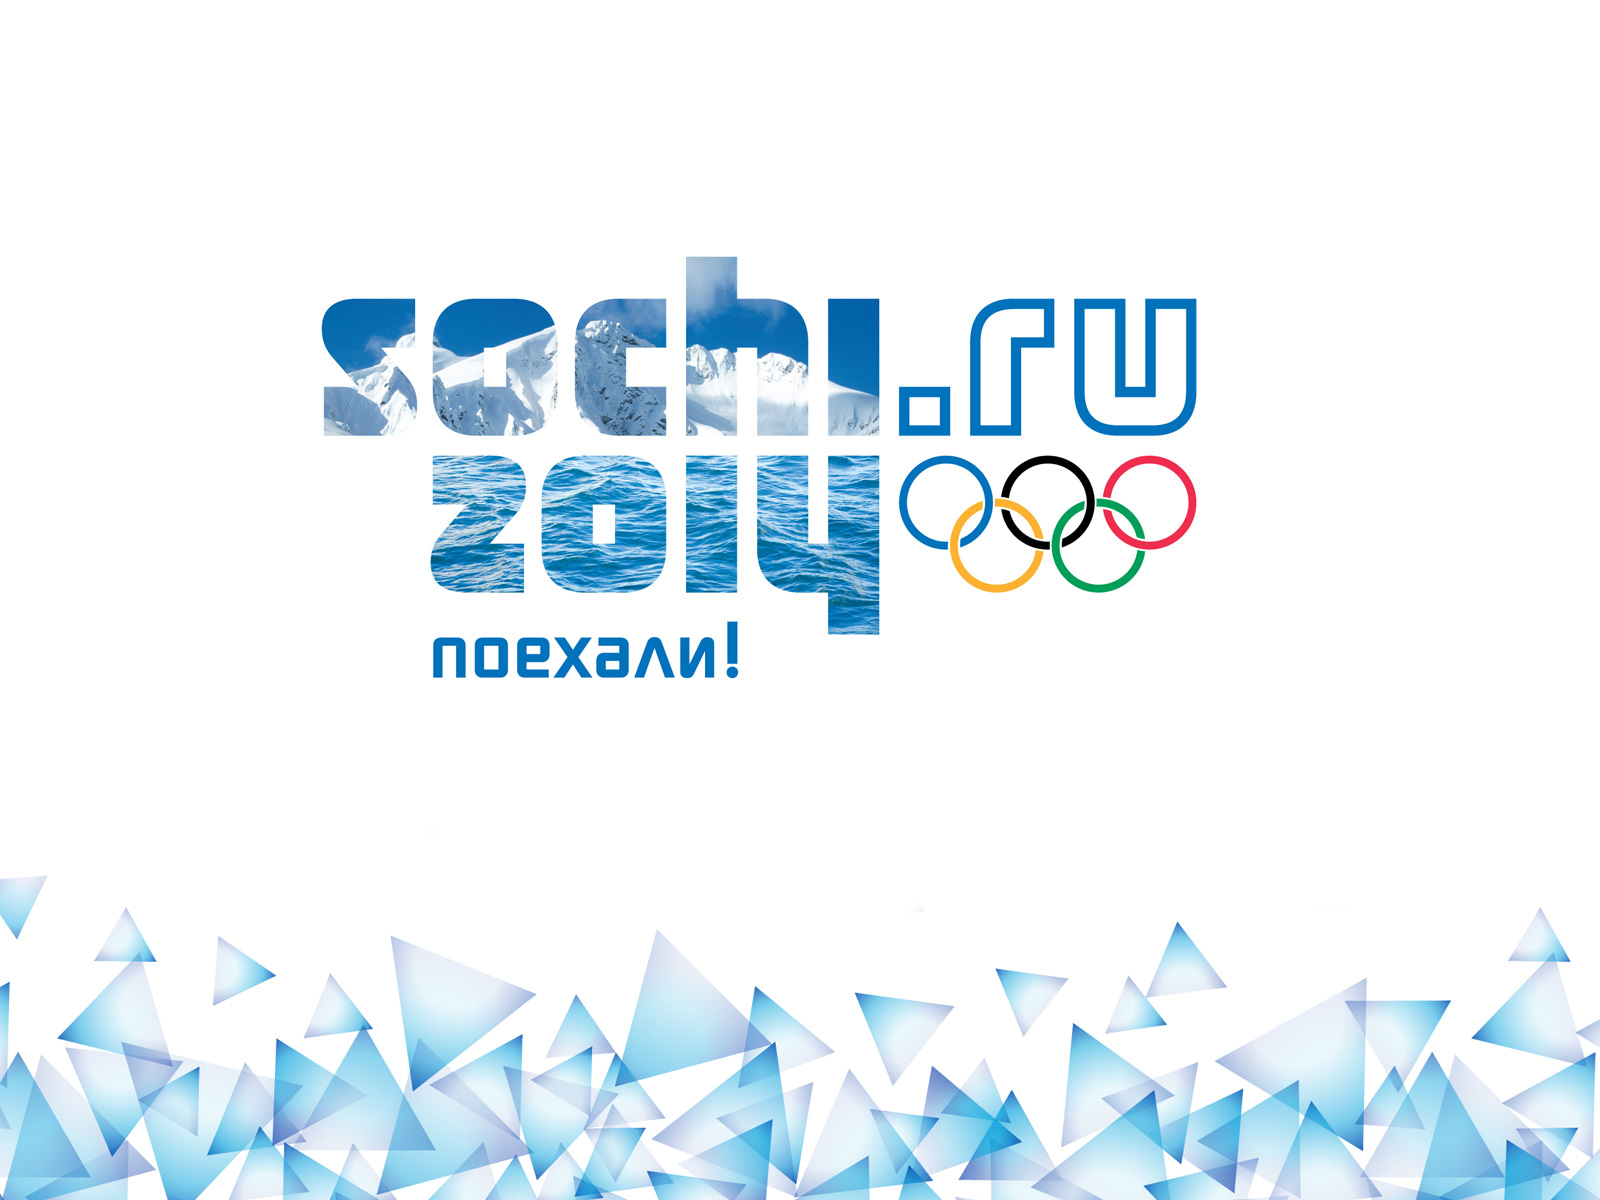 Juegos Olímpicos de Invierno Sochi 2014